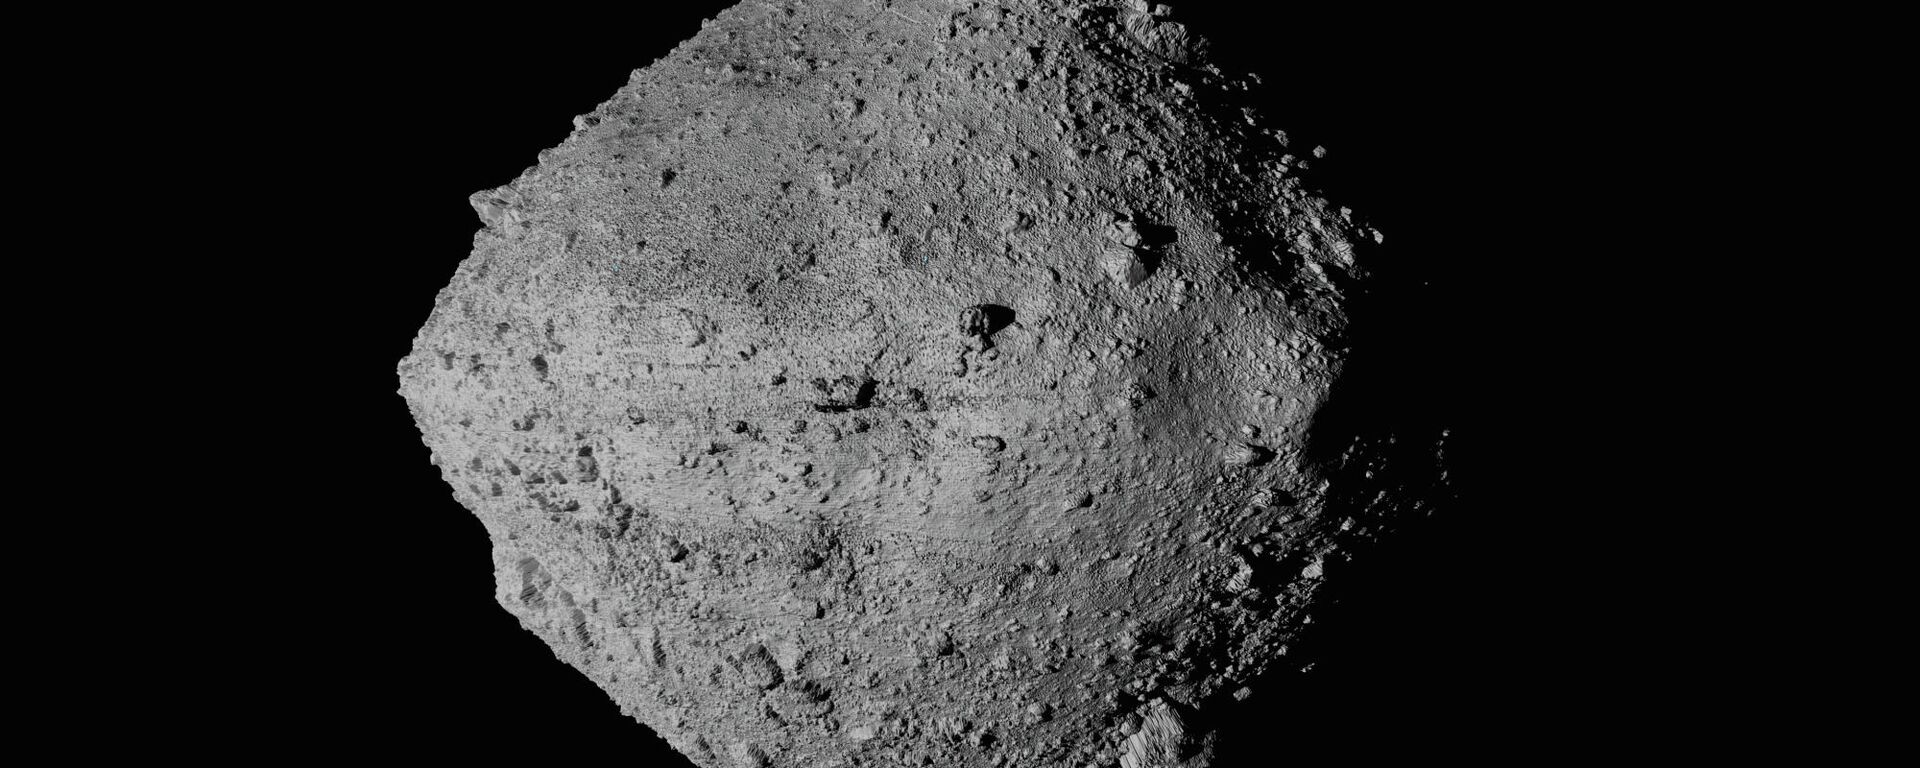 El asteroide Bennu, fotografiado desde la sonda Osiris-Rex - Sputnik Mundo, 1920, 10.05.2021